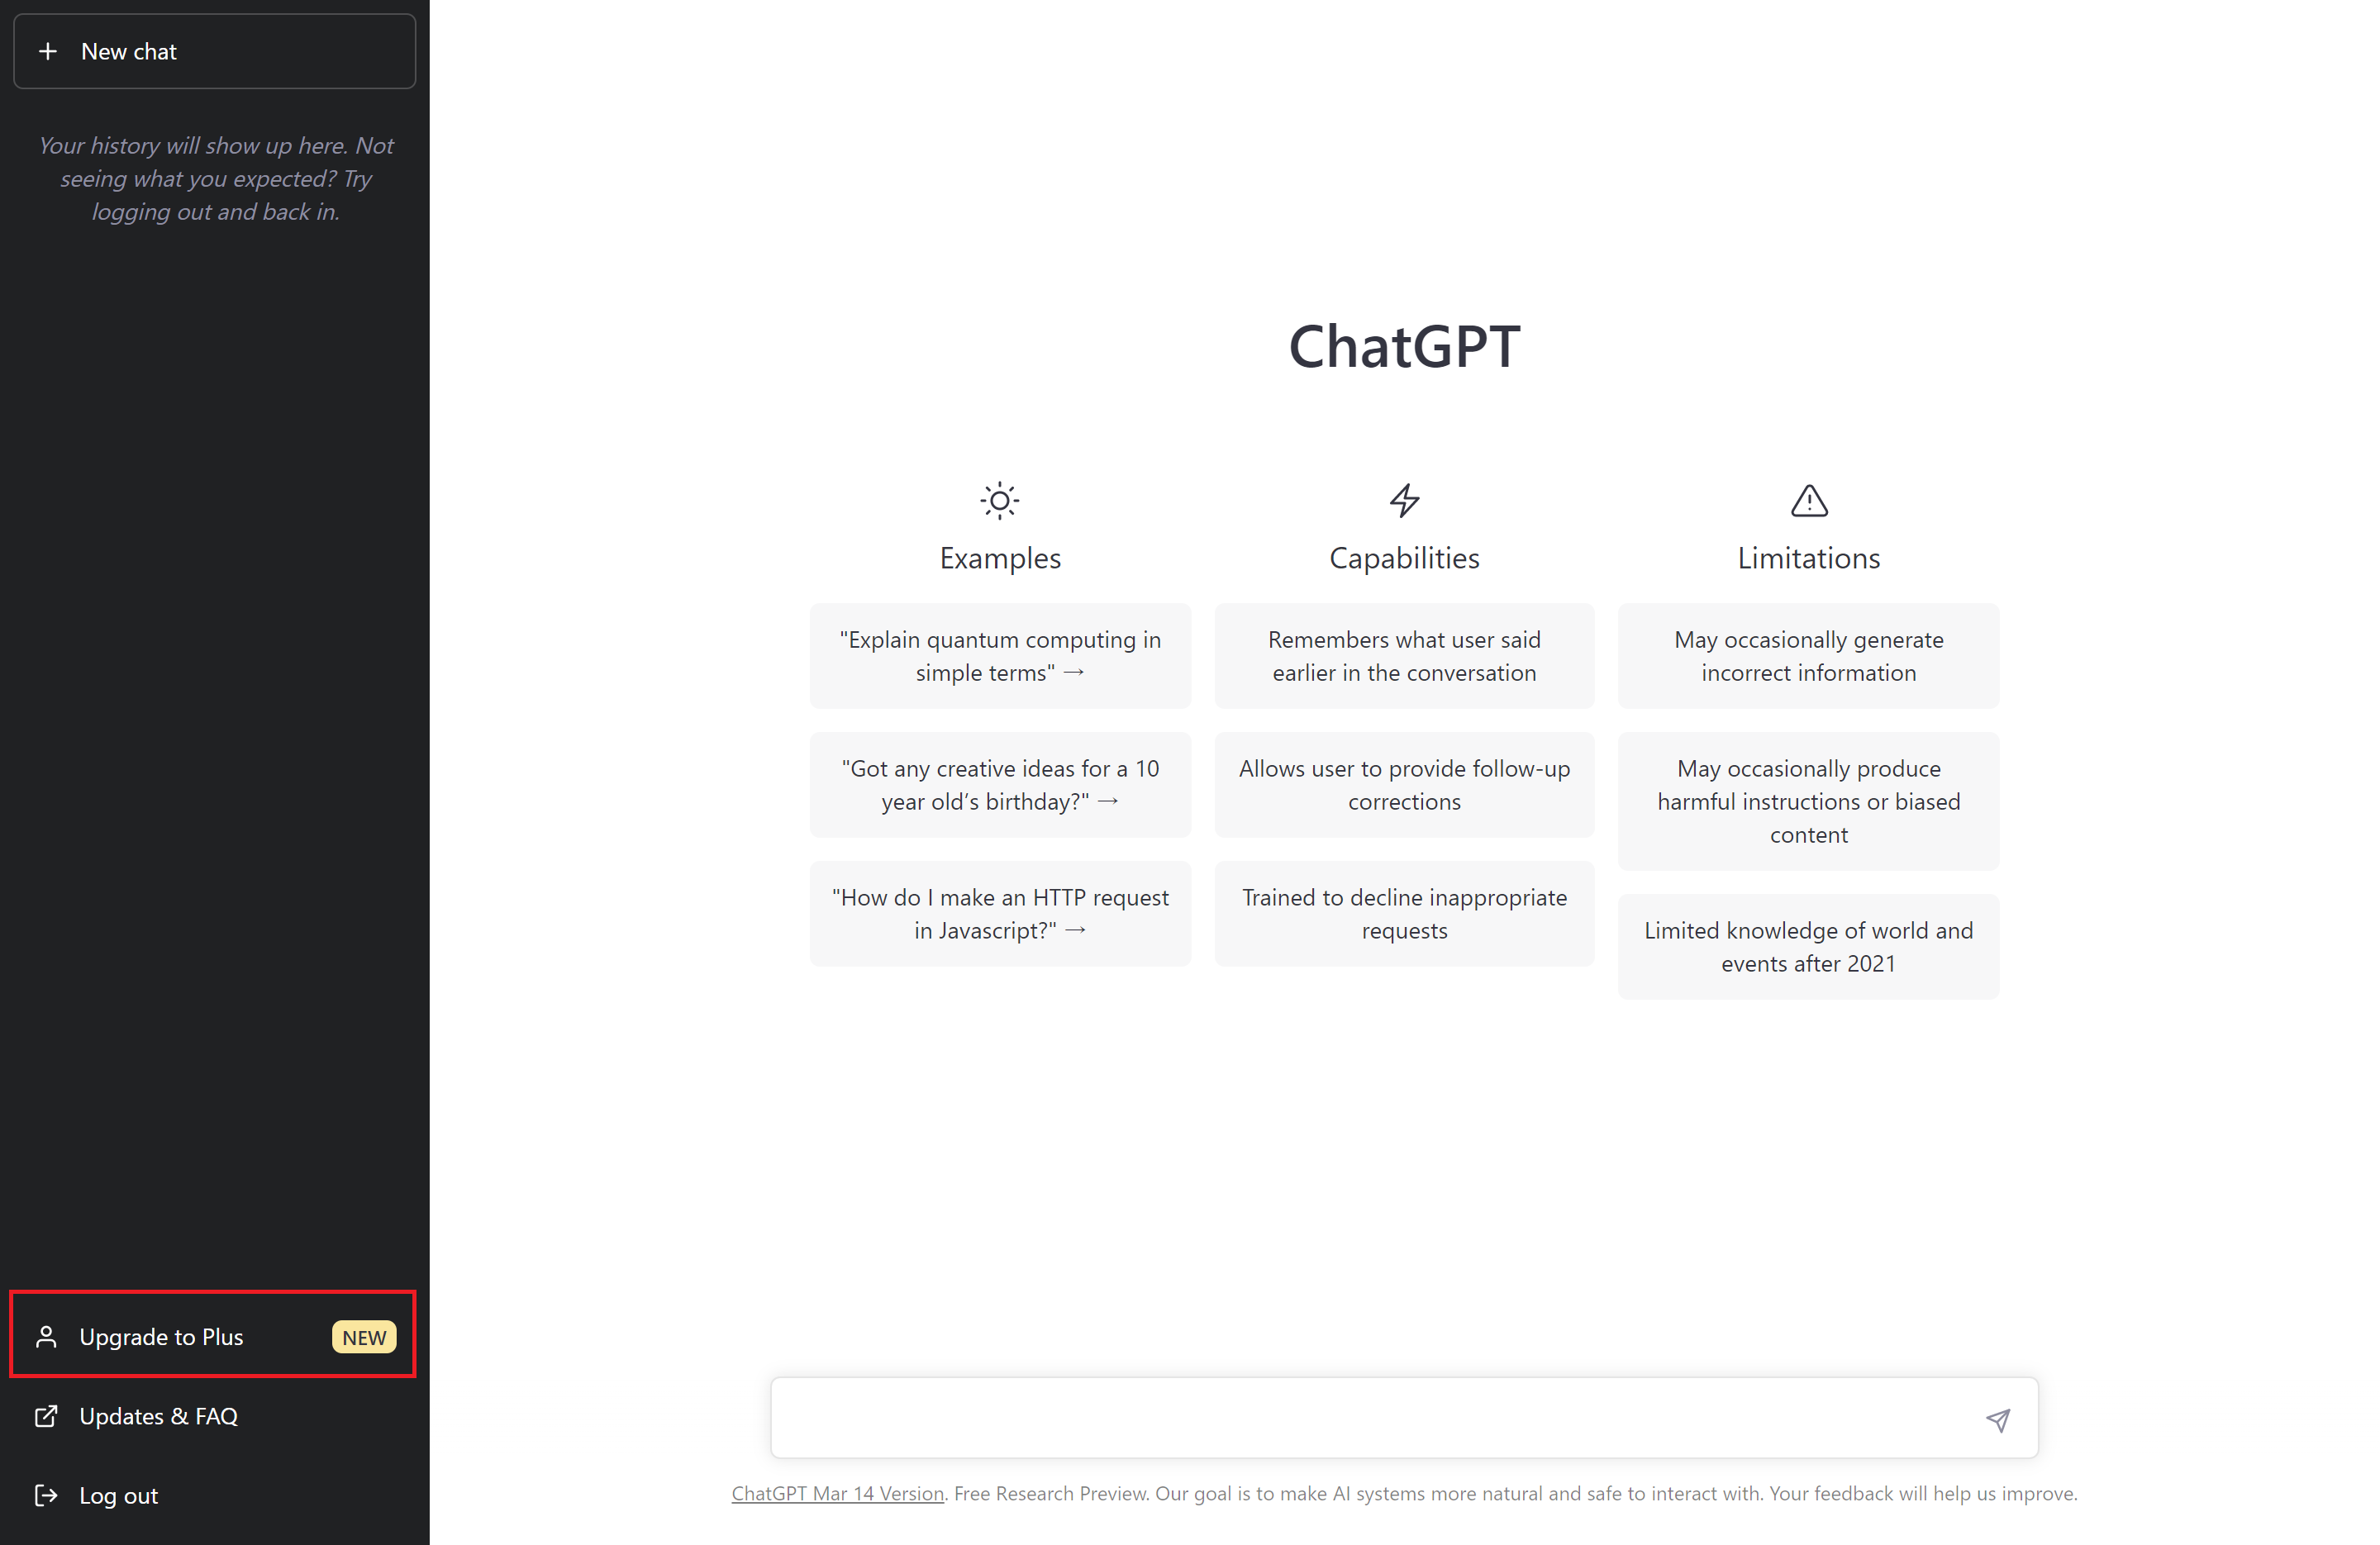 ChatGPTのホーム画面、Upgrade to Plusを赤枠で囲っている